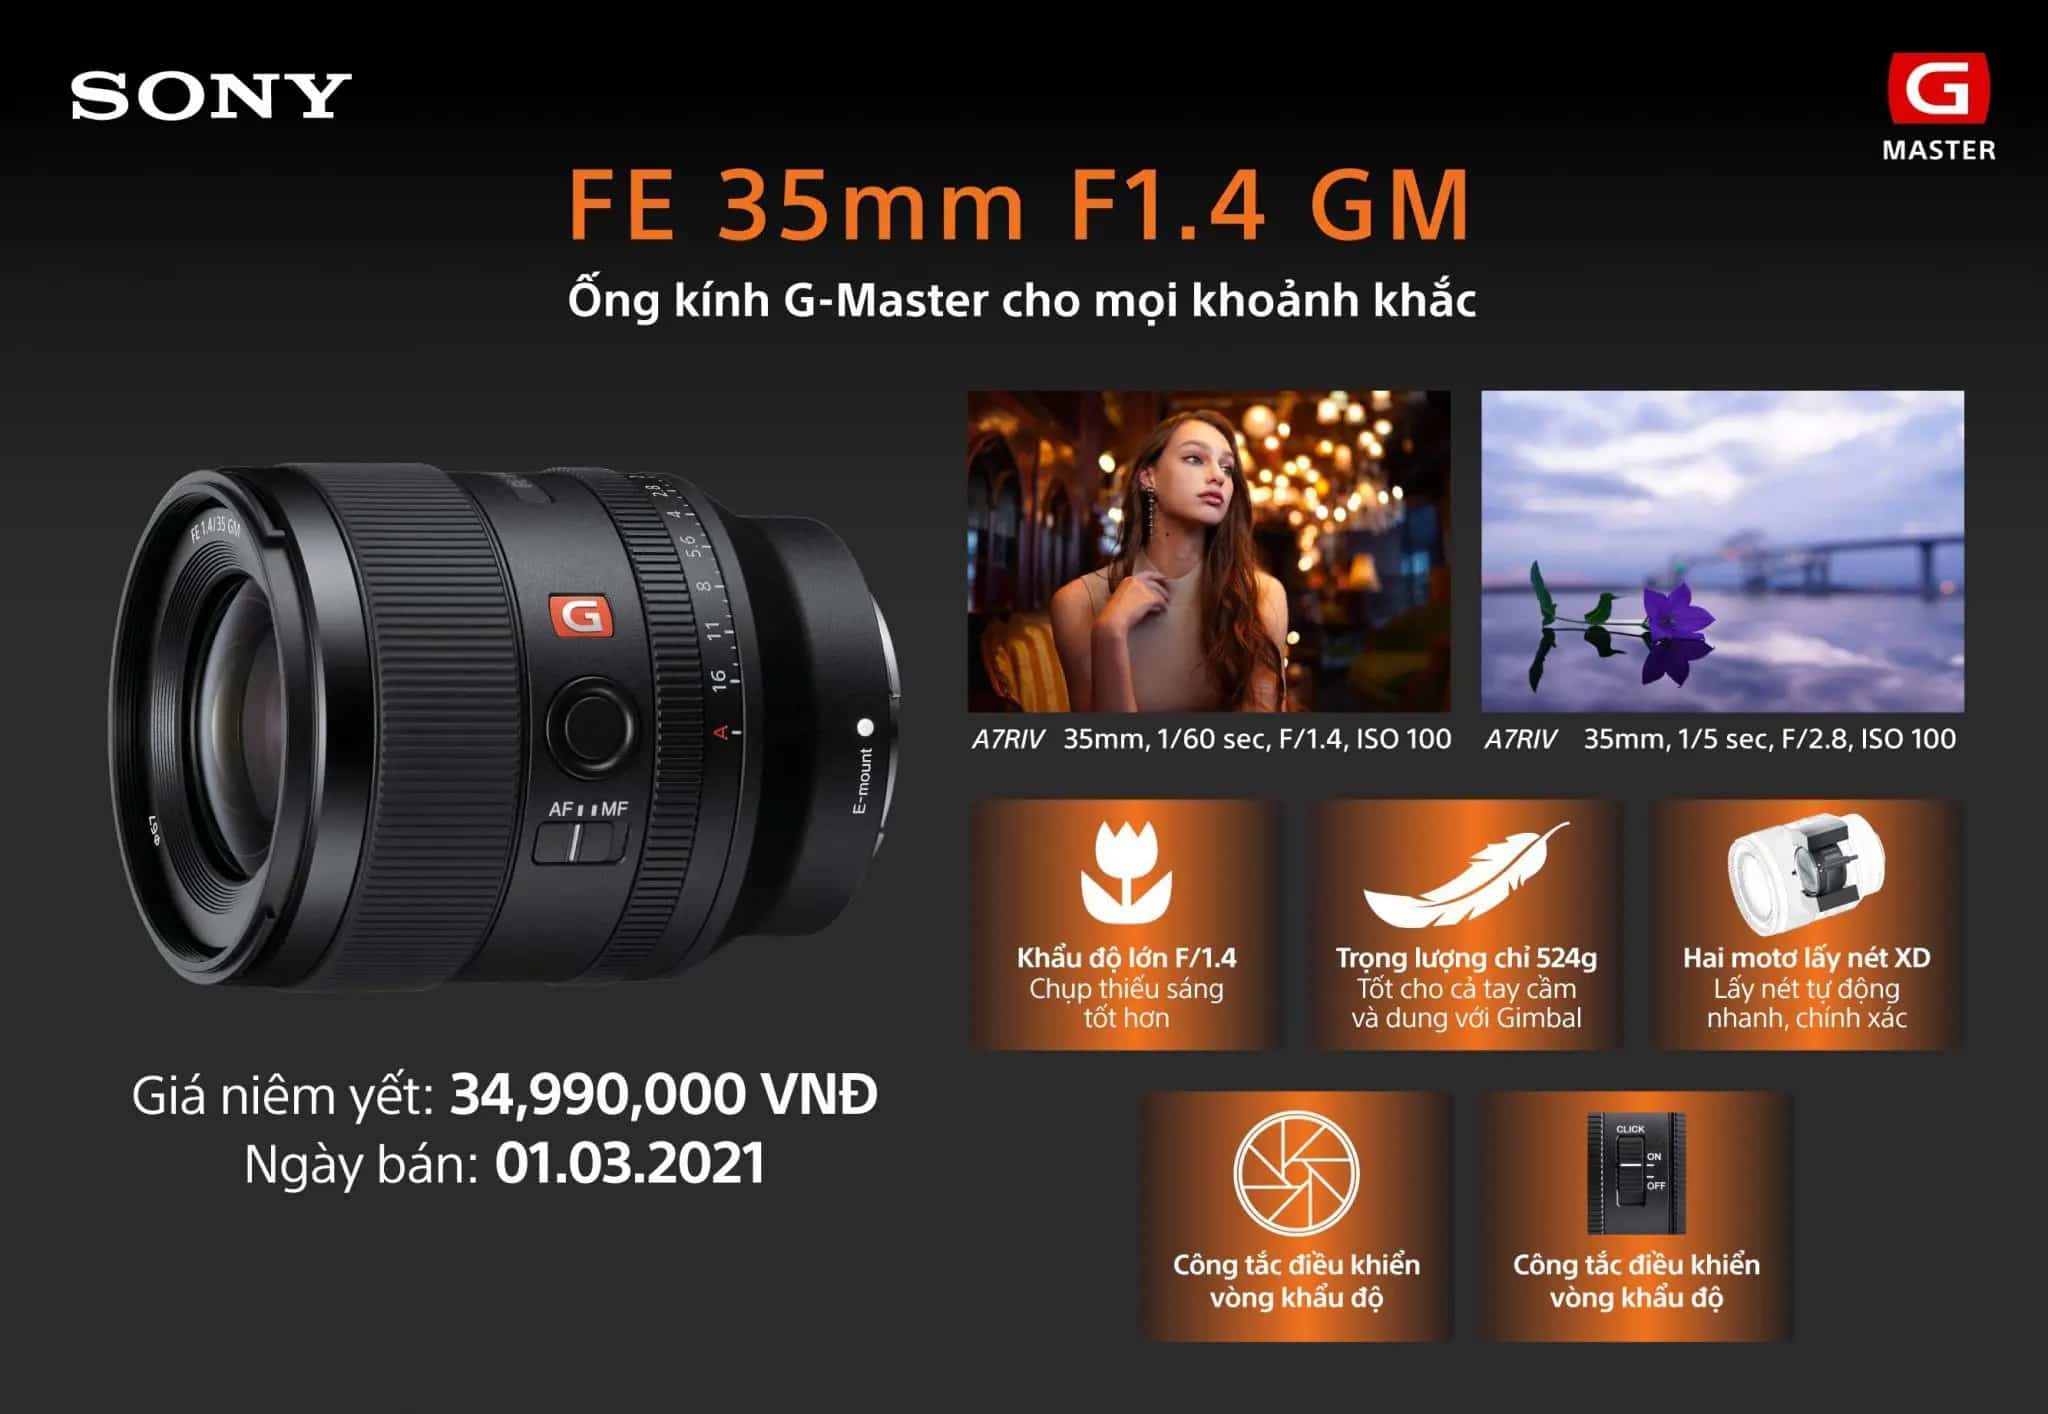 Sony FE 35mm F1.4 GM ra mắt tại Việt Nam, giao hàng từ 01/03/2021, giá 34.990.000đ